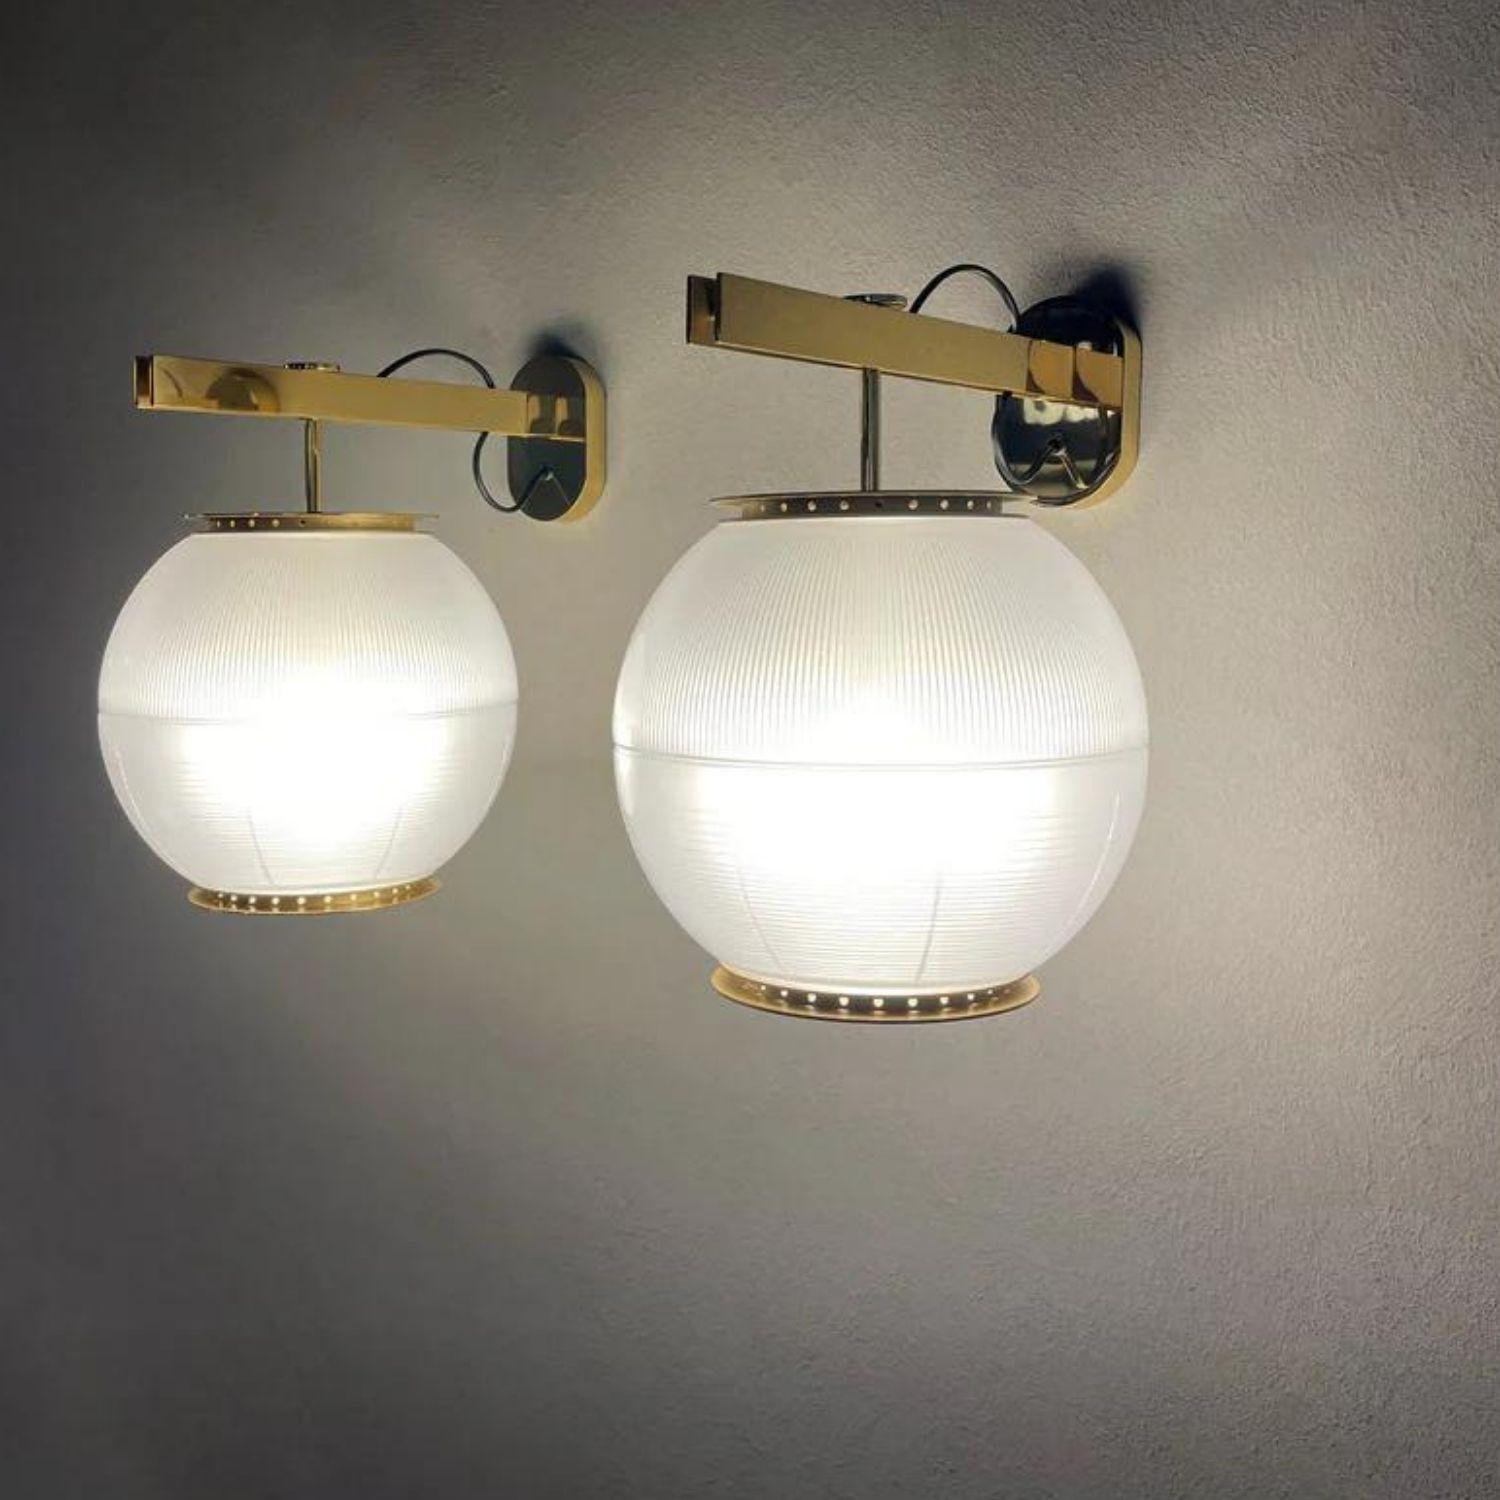 Polished Ignazio Gardella 'Doppio Vetro' Wall Lamp in Brass and Glass for Tato Italia For Sale